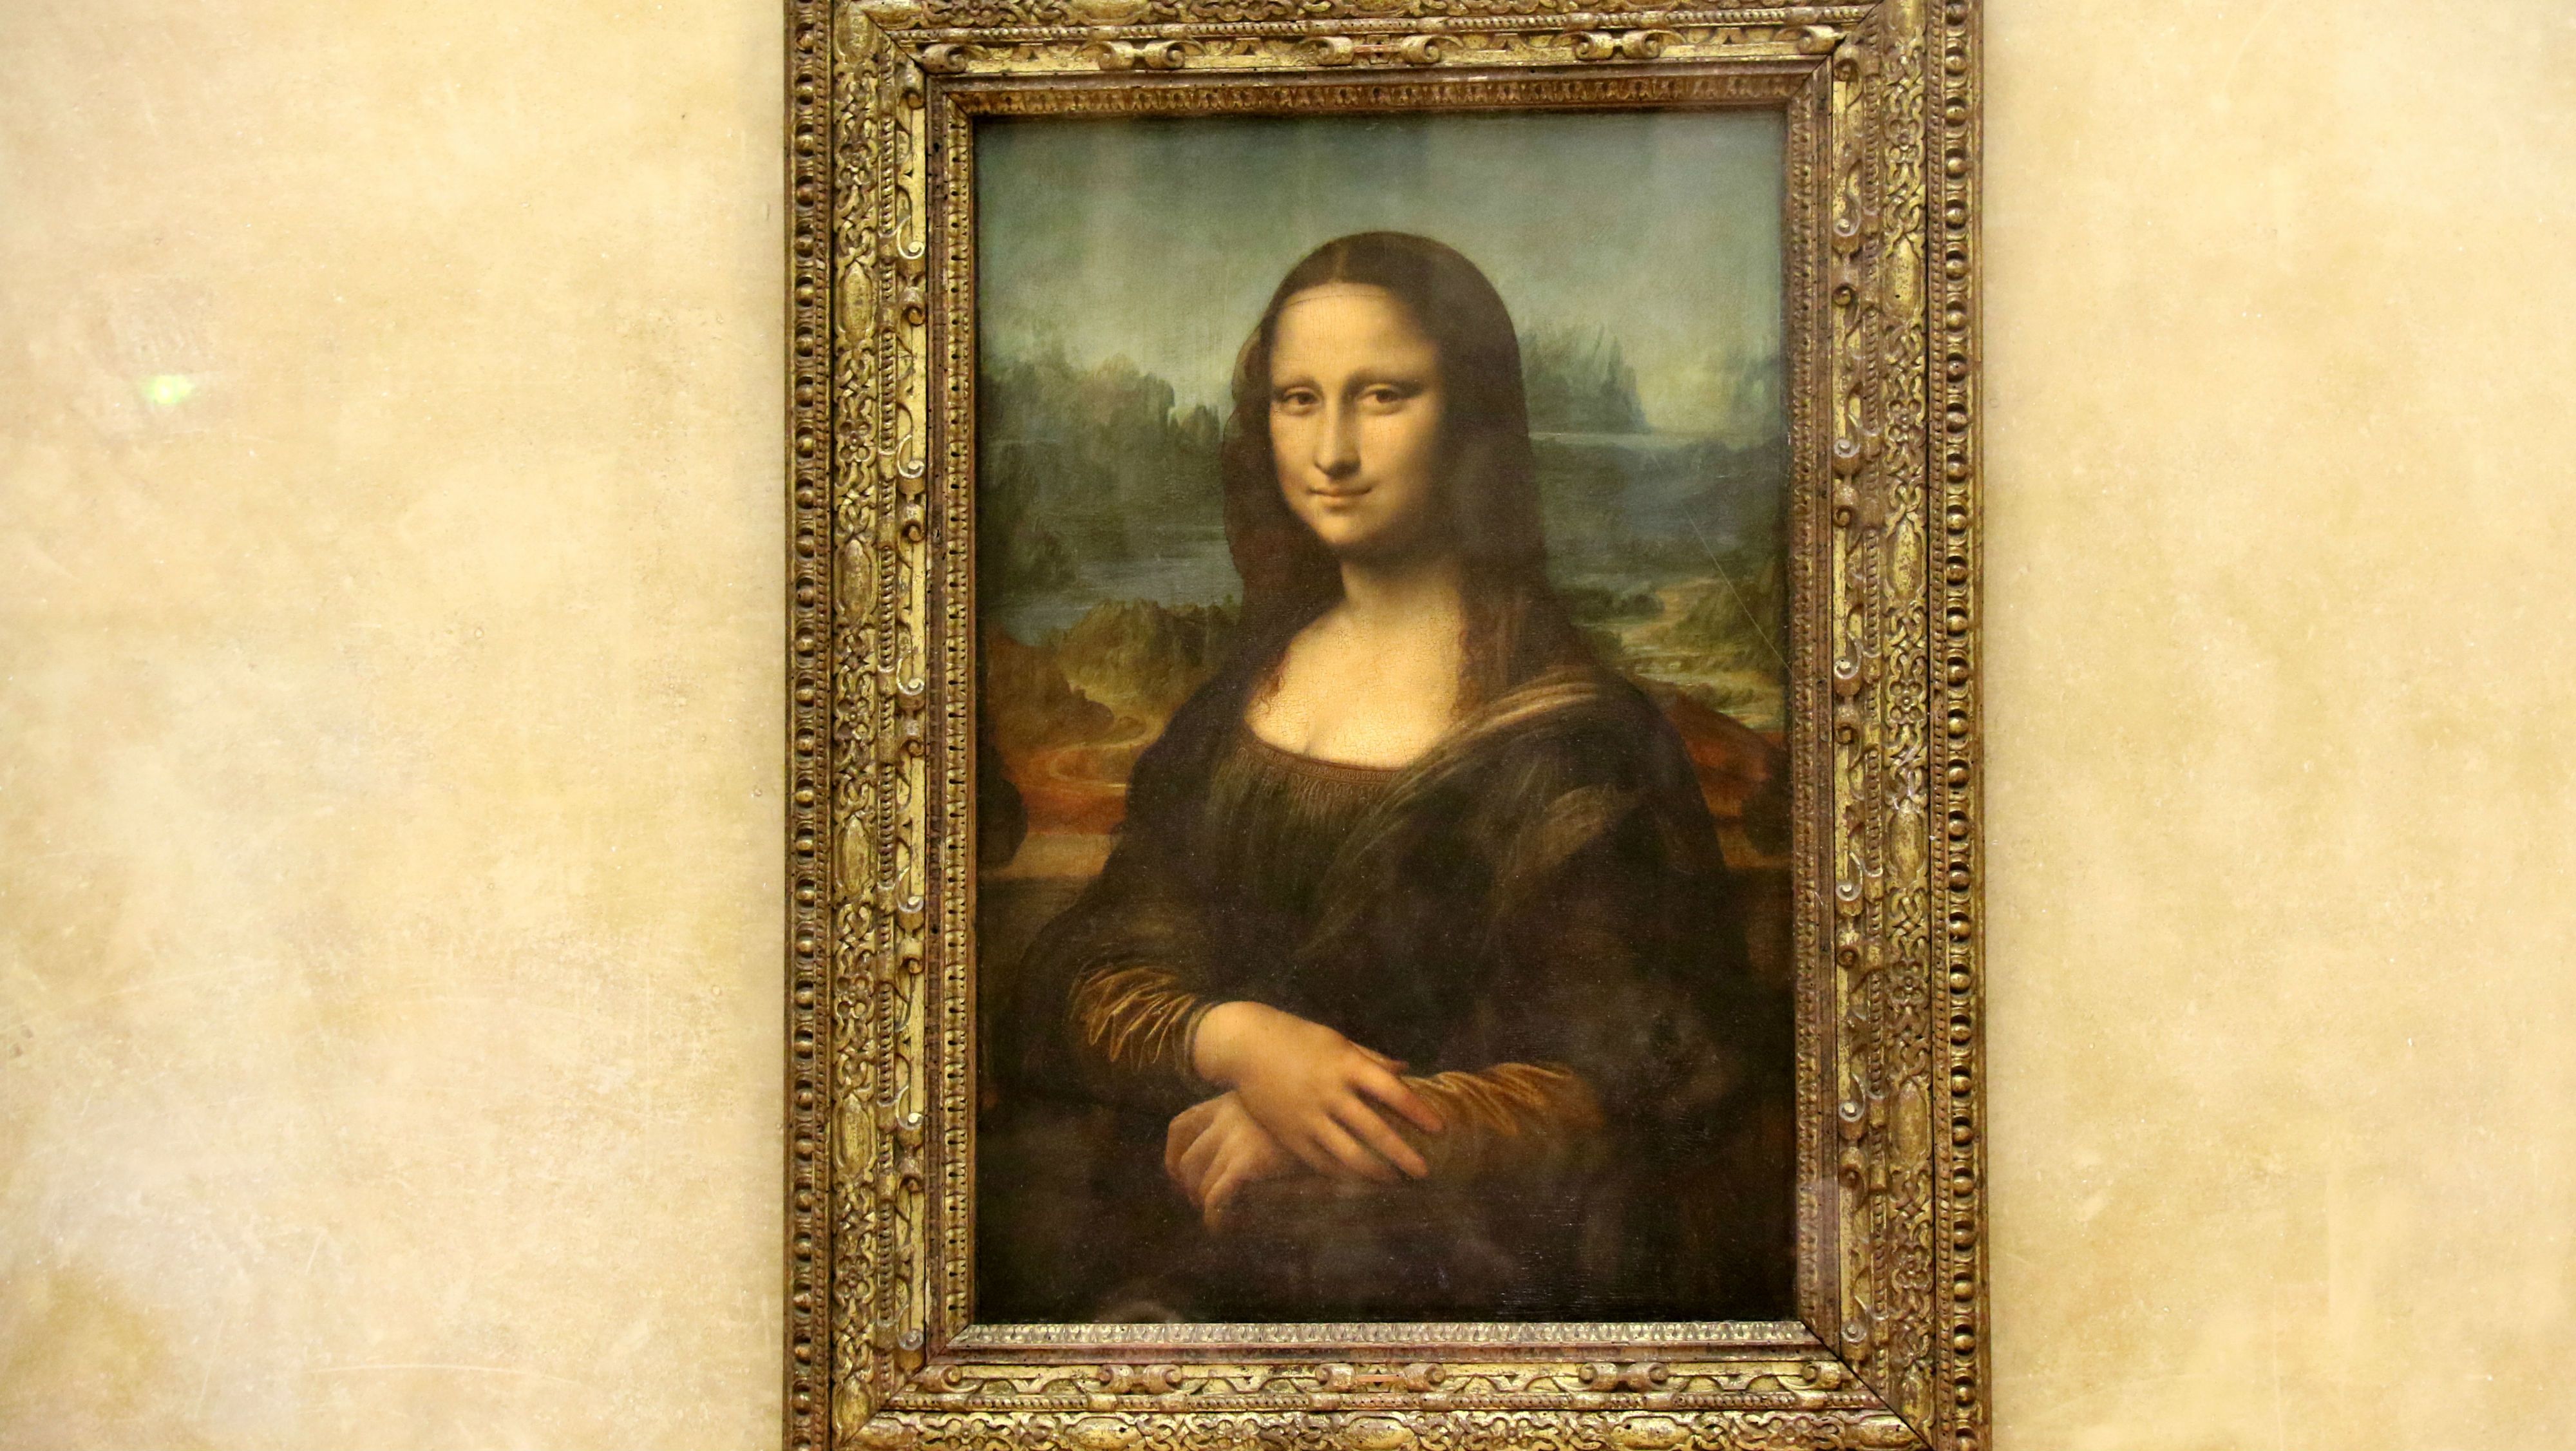 Ön is észrevette, hogy nem őszinte Mona Lisa mosolya?